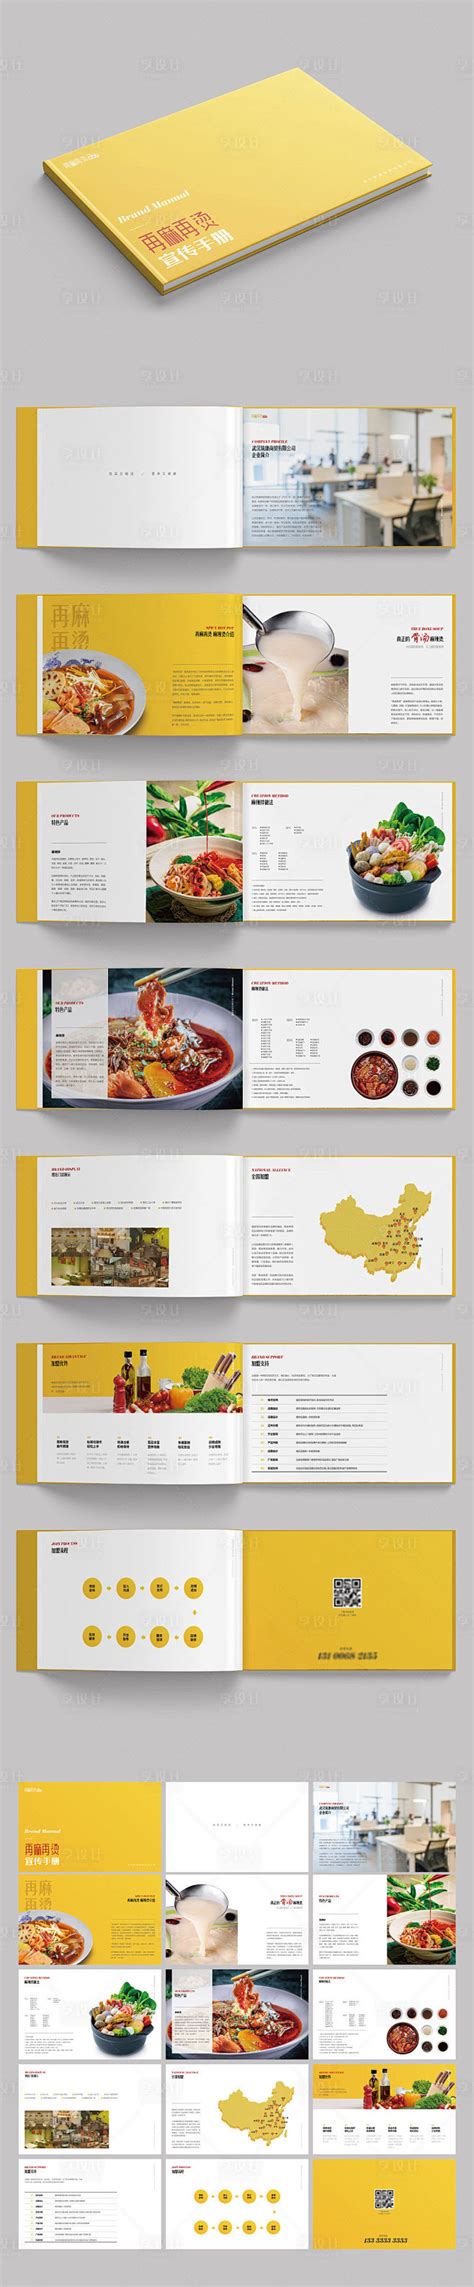 餐饮招商手册设计制作是怎样收费的-行业资讯--